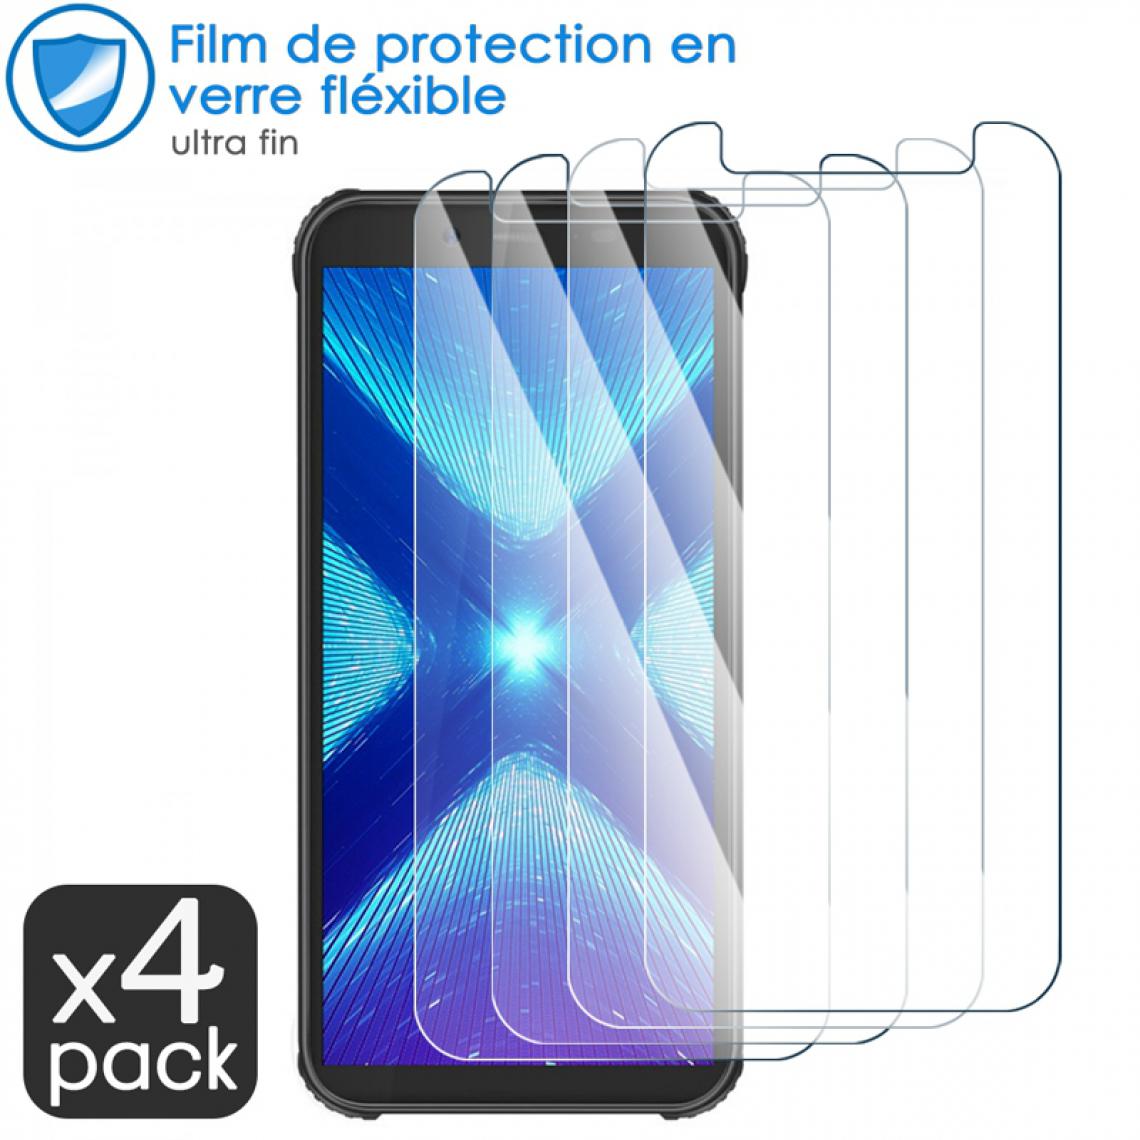 Karylax - Film de Protection d'écran en Verre Fléxible Dureté 9H pour Yestel G8+ (Pack x4) - Protection écran smartphone